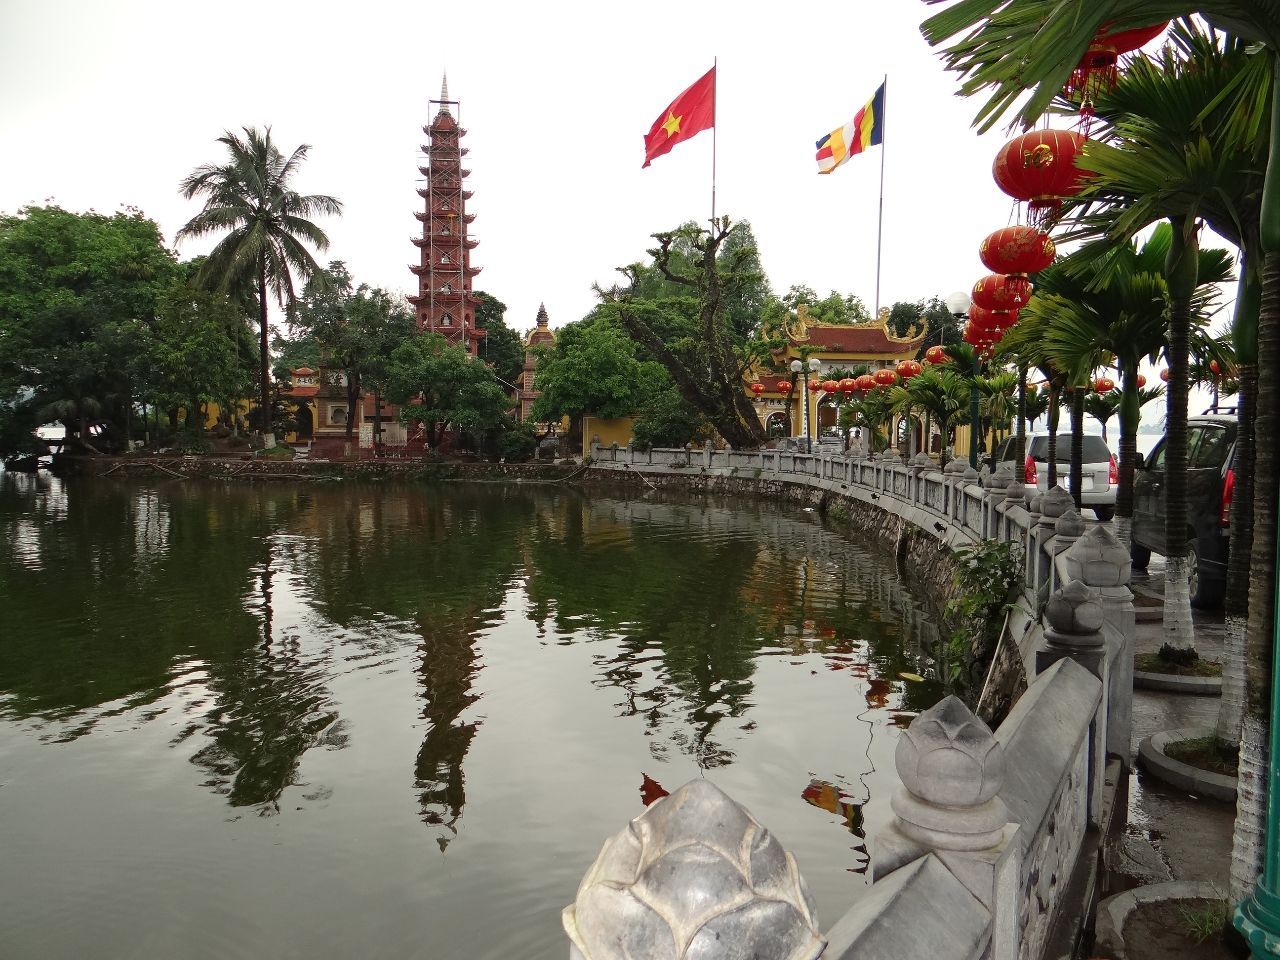 пагода Чан Куок символизирует умиротворение - Фотоотчет Вьетнам 2019. Часть 1 - день 1